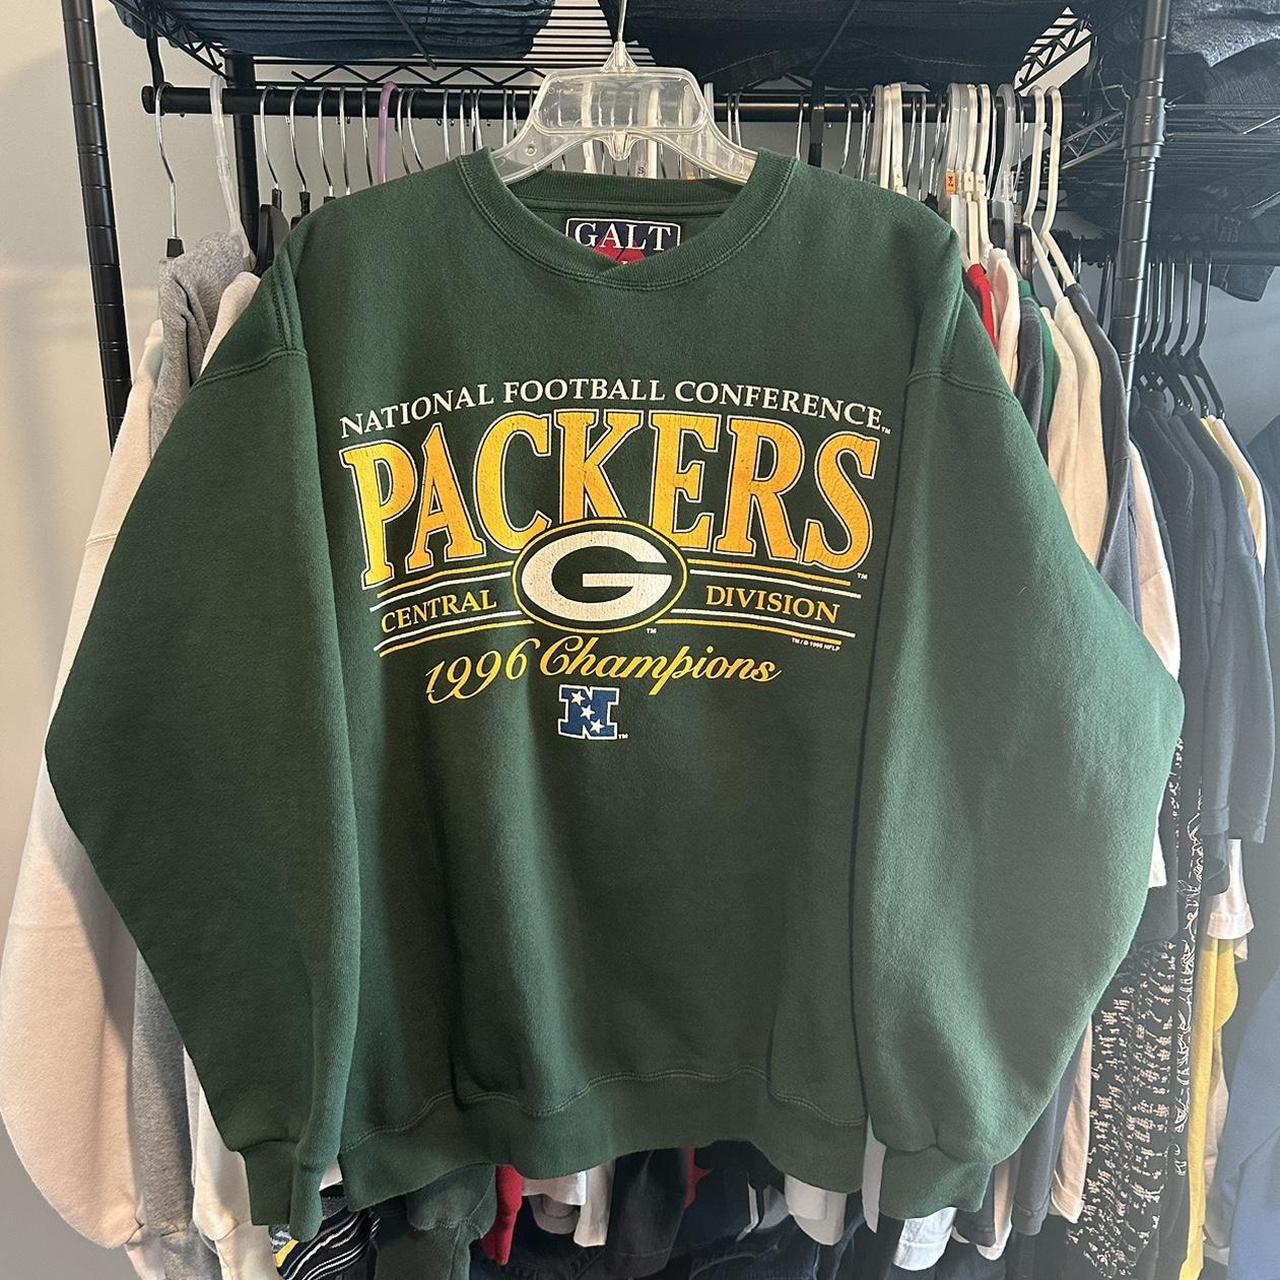 vintage green bay packer sweatshirt